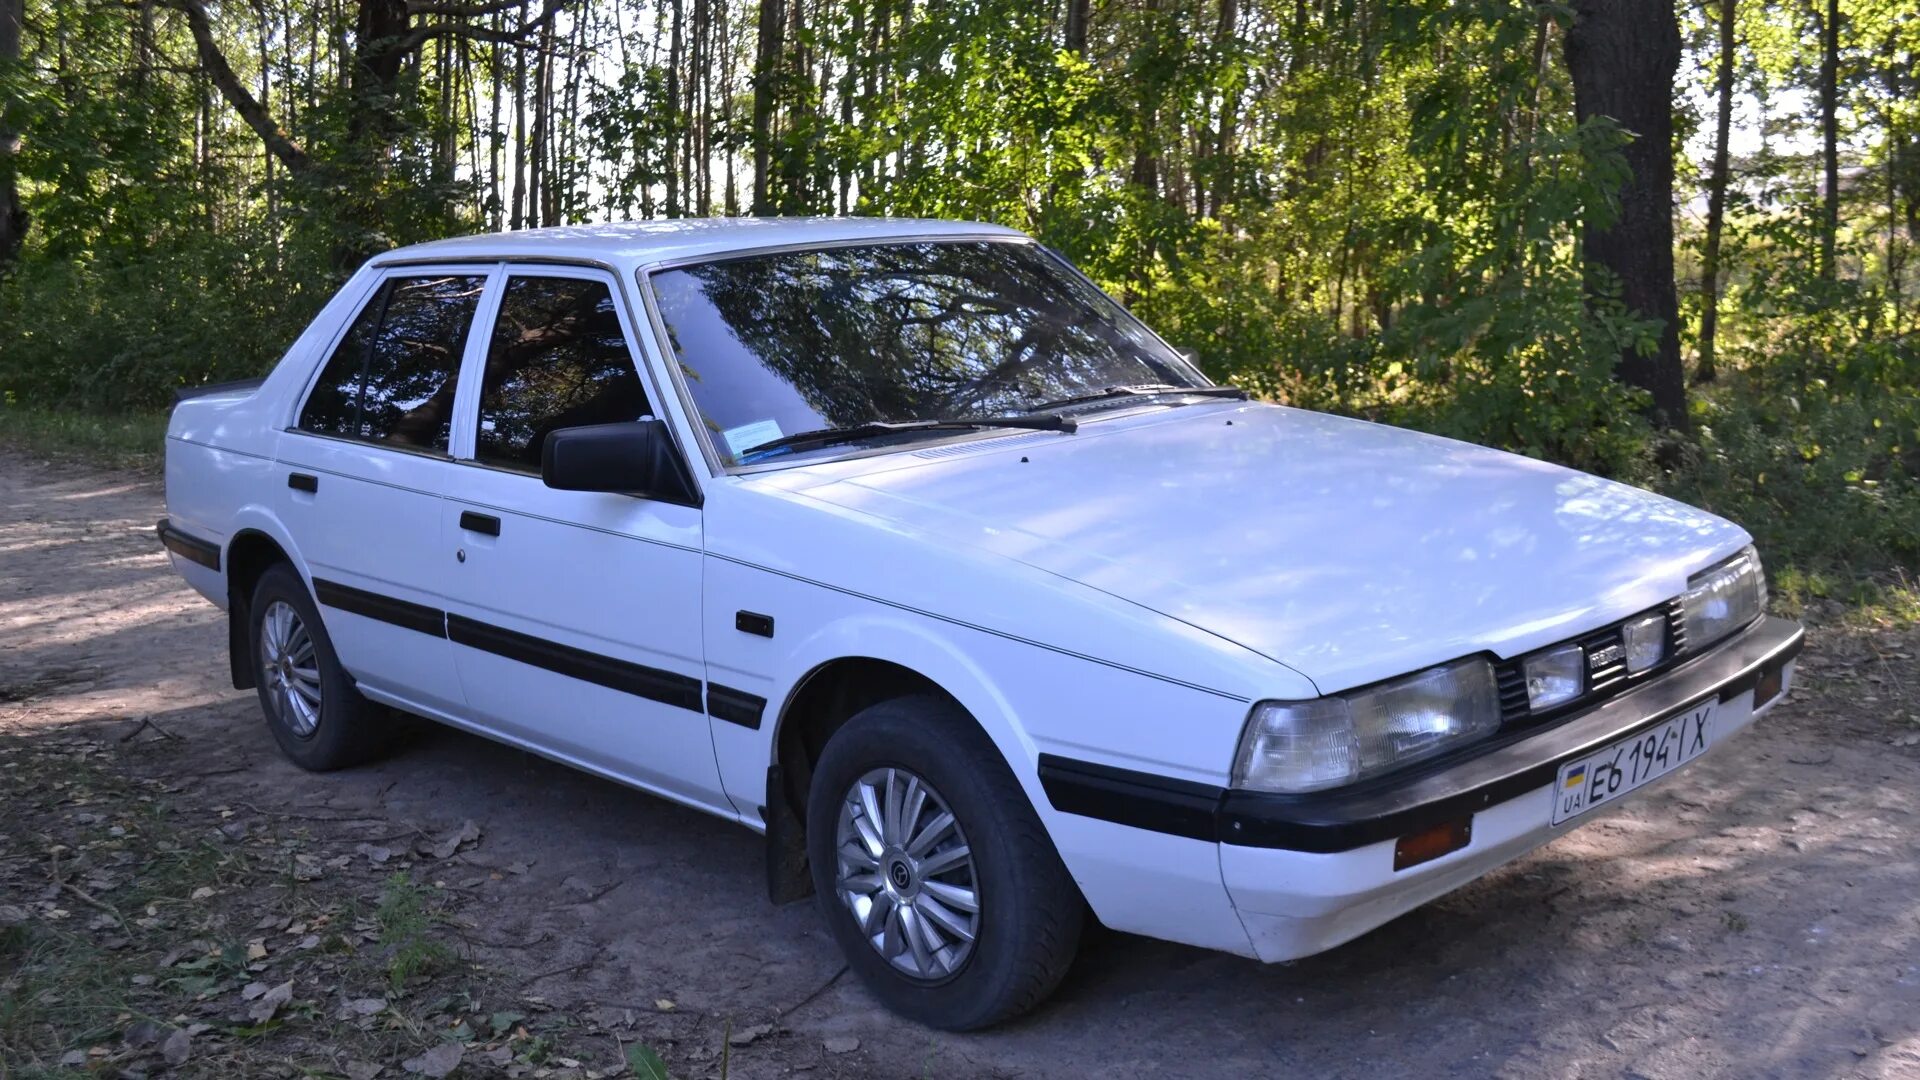 Mazda 626 1986. Мазда 626 1986г. Мазда 626 1983г. Мазда 626 1983/1986. Мазда 1986